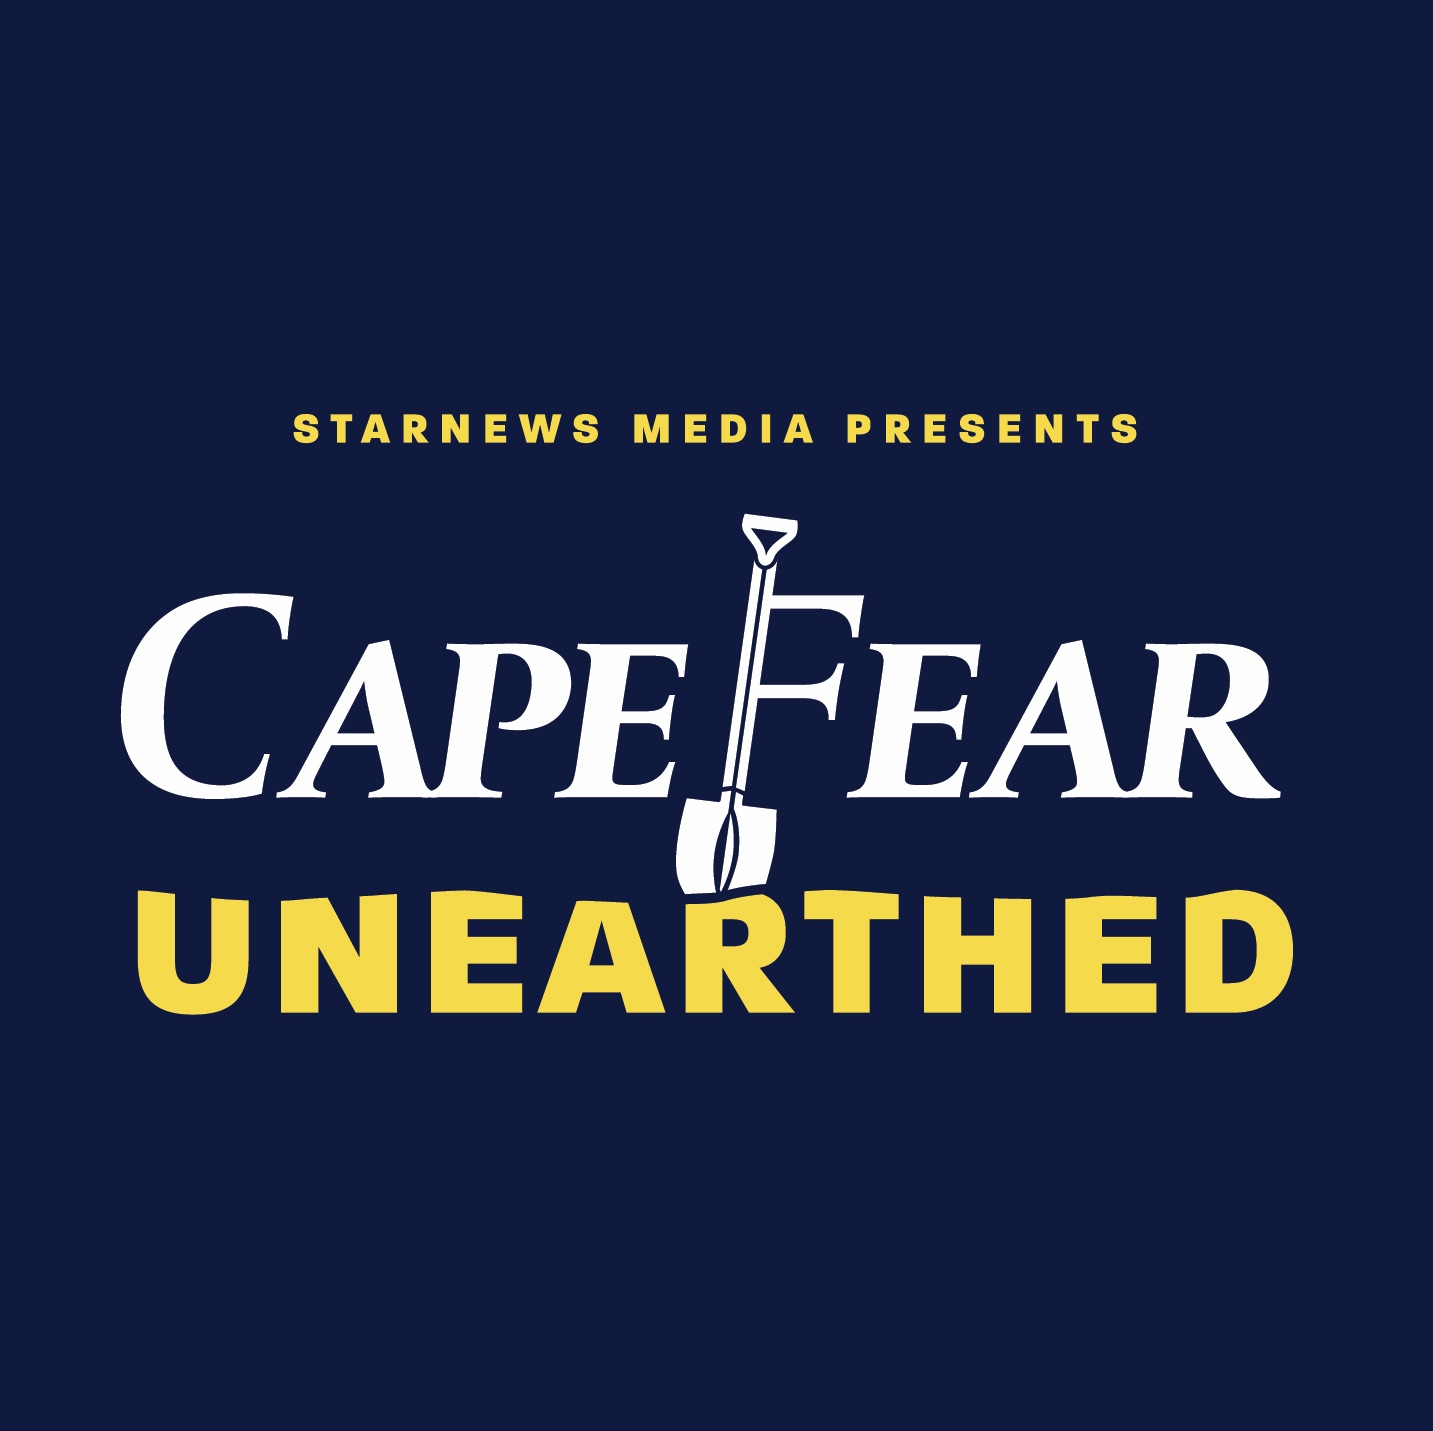 Revolution Comes to the Cape Fear